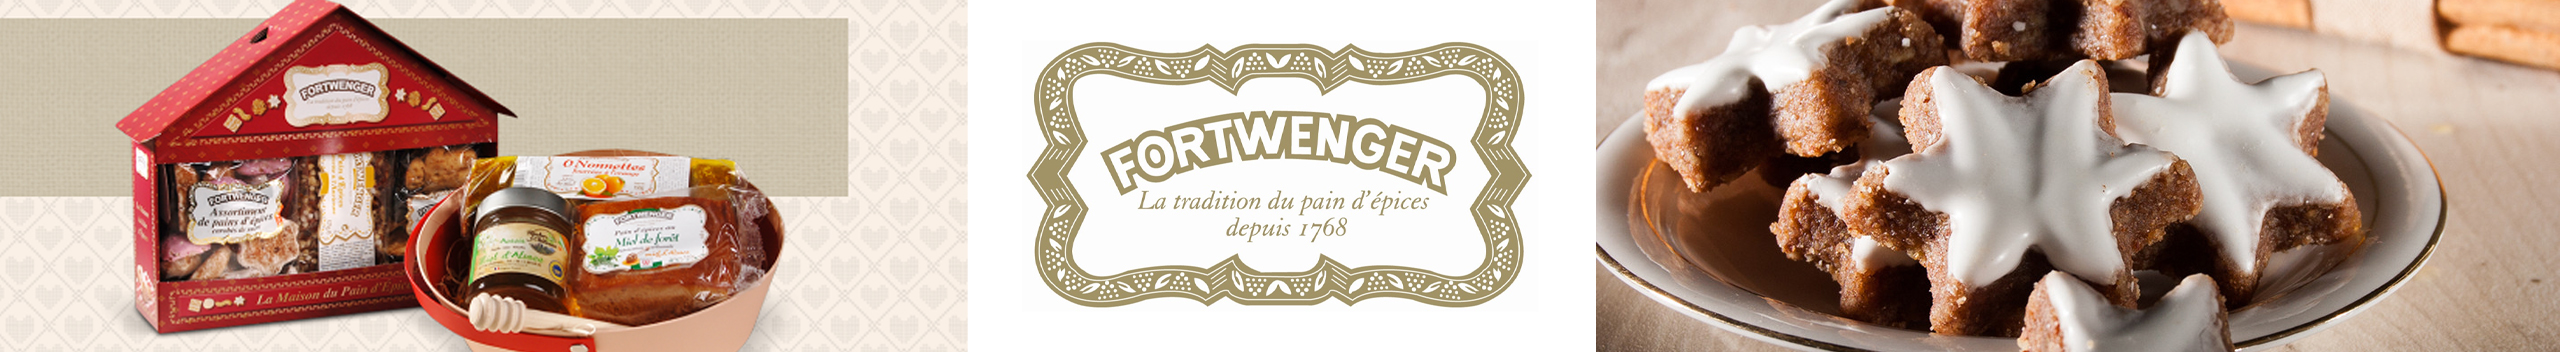 Farine - préparation pour pain d'épices 500g - Fortwenger Alsace